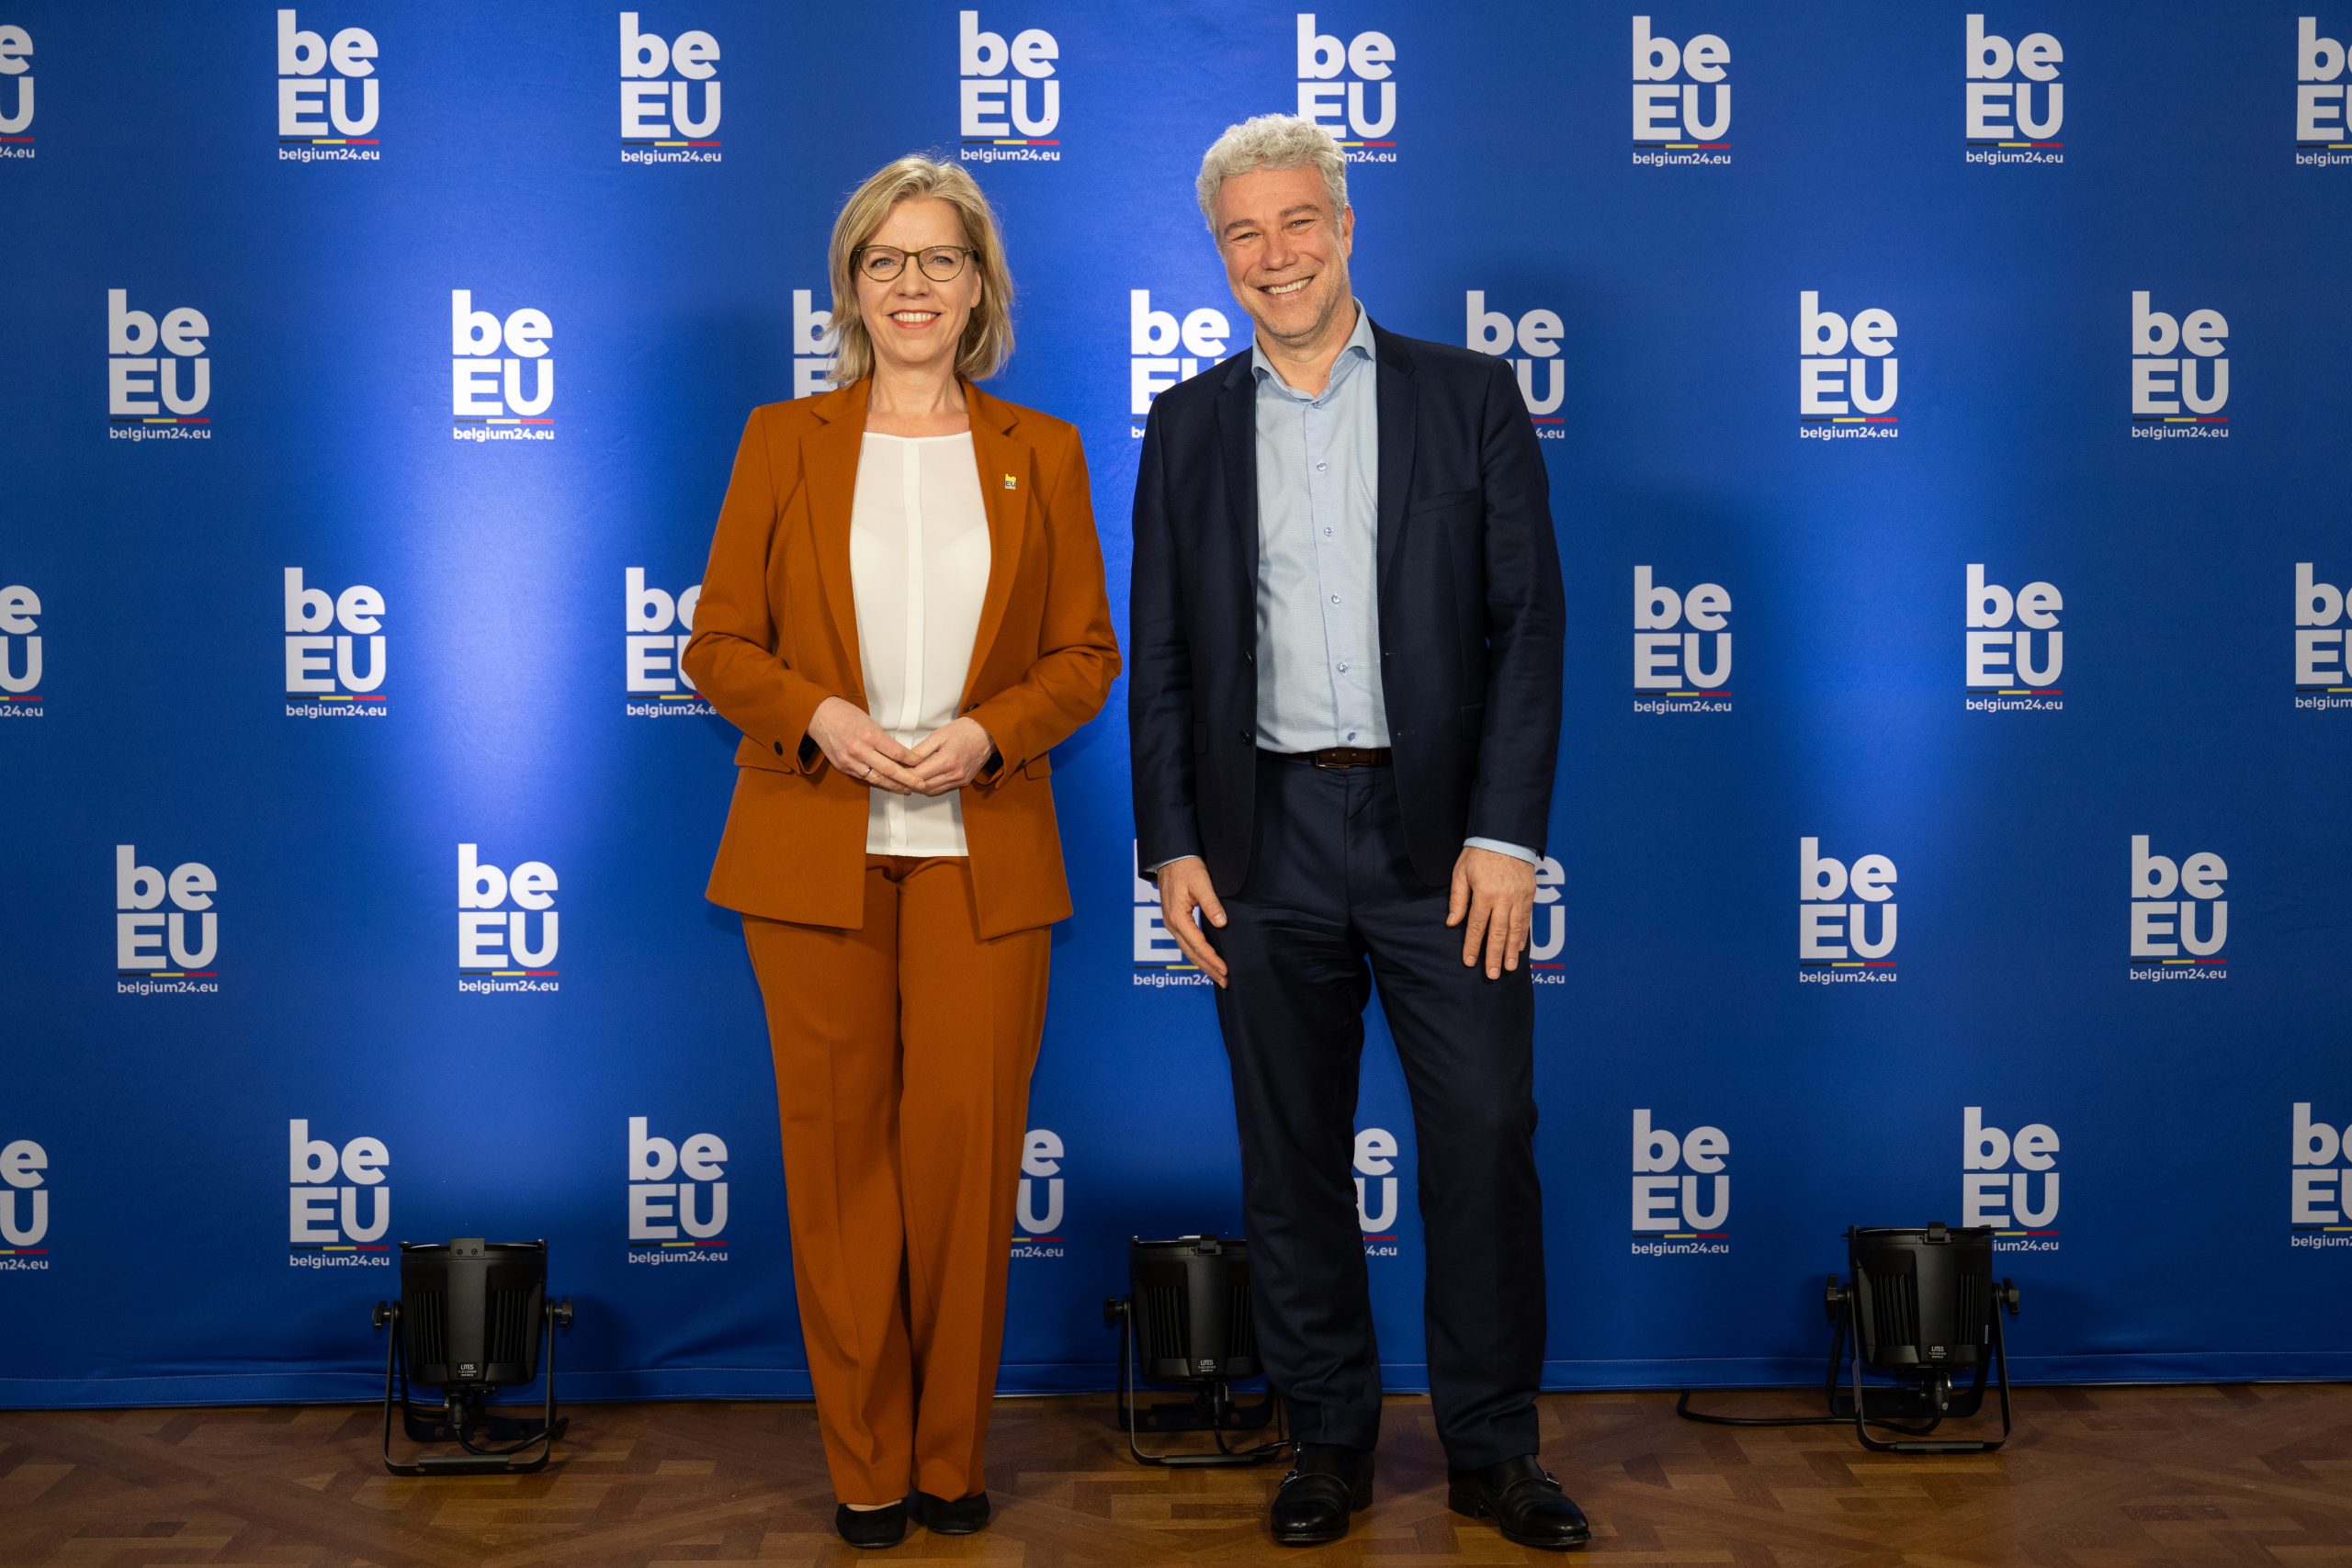 Twee ministers poseren voor een blauwe achtergrond.